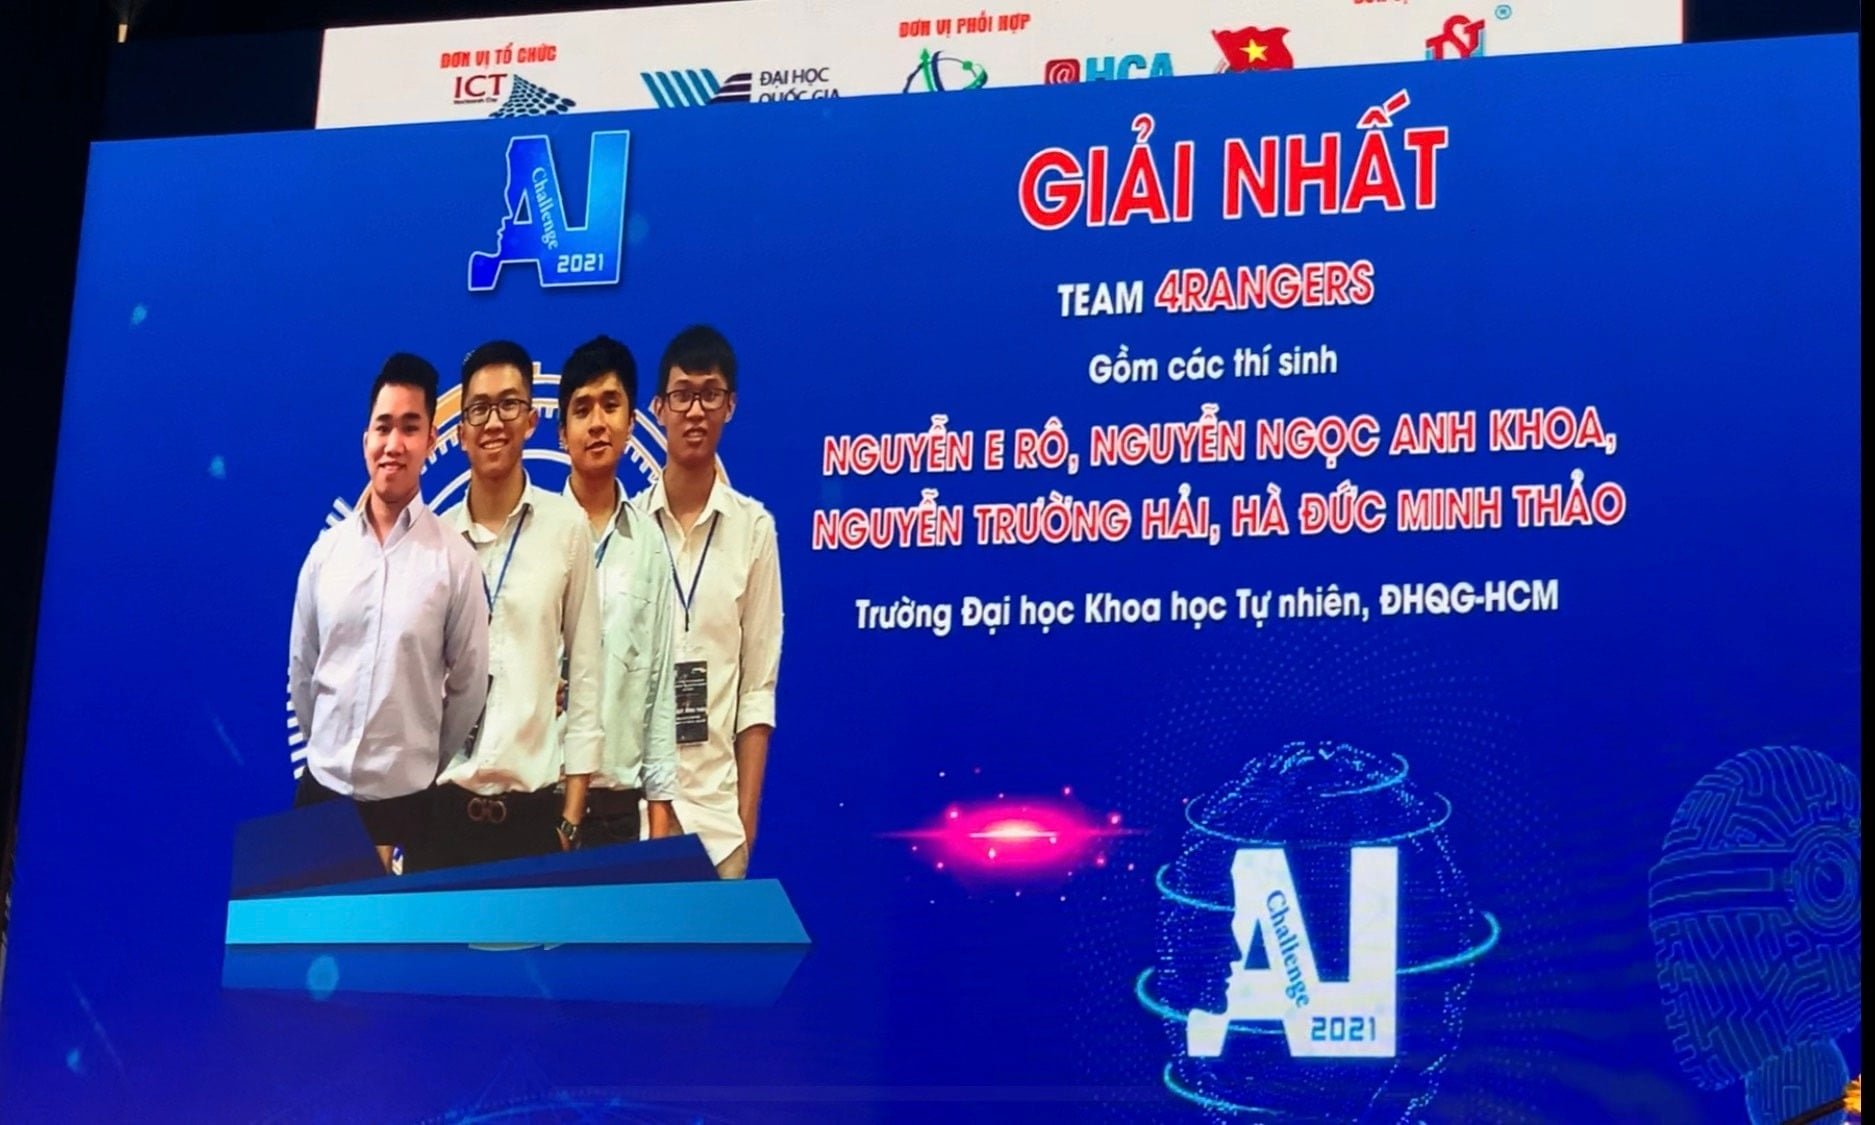 Nhóm sinh viên 4RANGERS Khoa Công nghệ Thông tin giành giải Nhất tại “Hội thi Thử thách trí tuệ nhân tạo Tp. Hồ Chí Minh năm 2021″